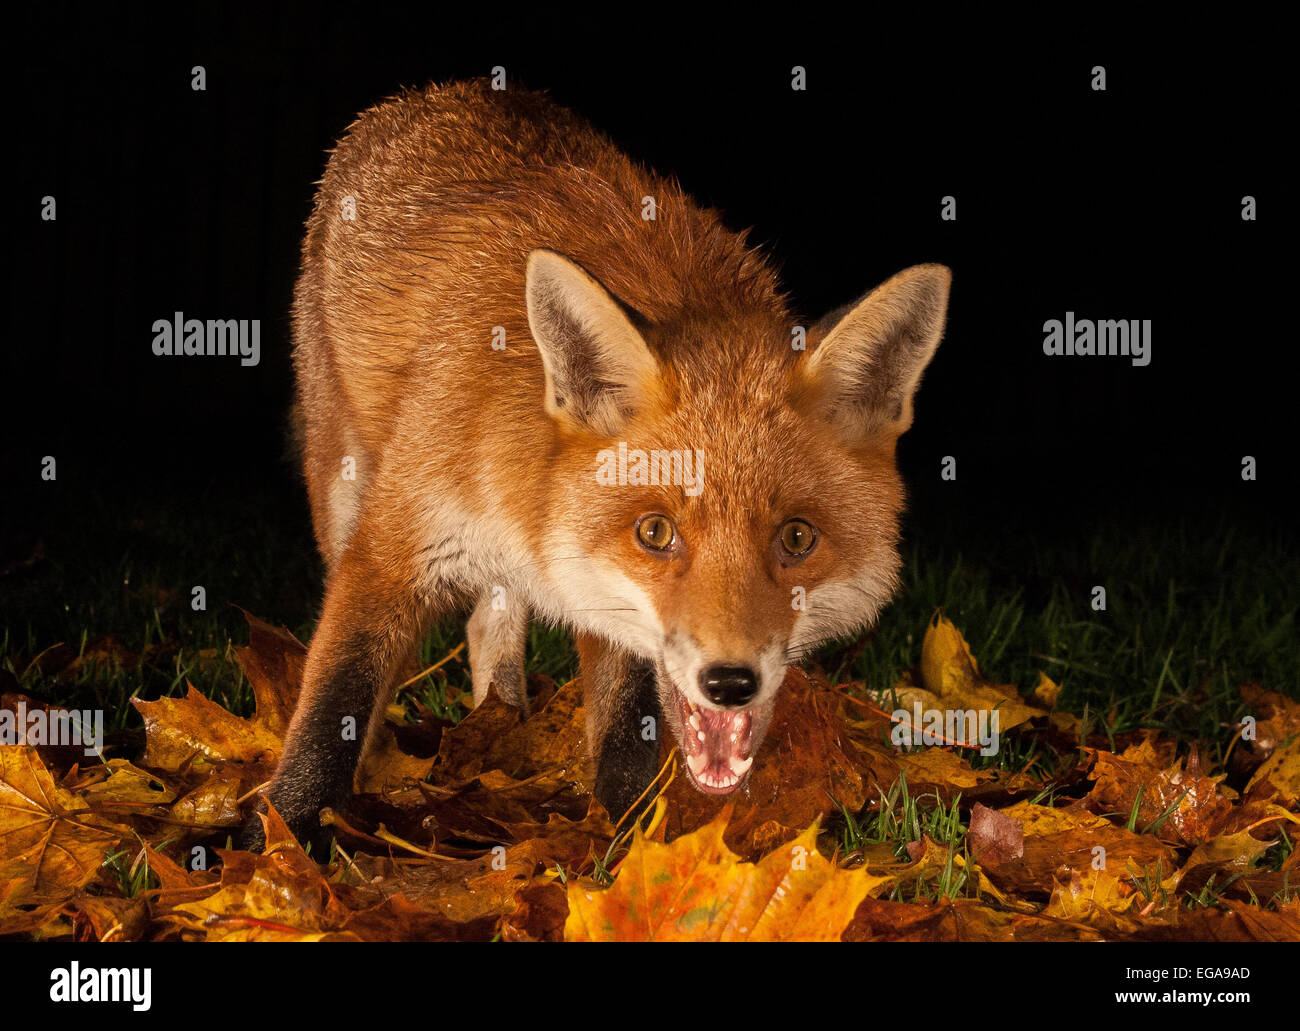 red fox night shot Stock Photo